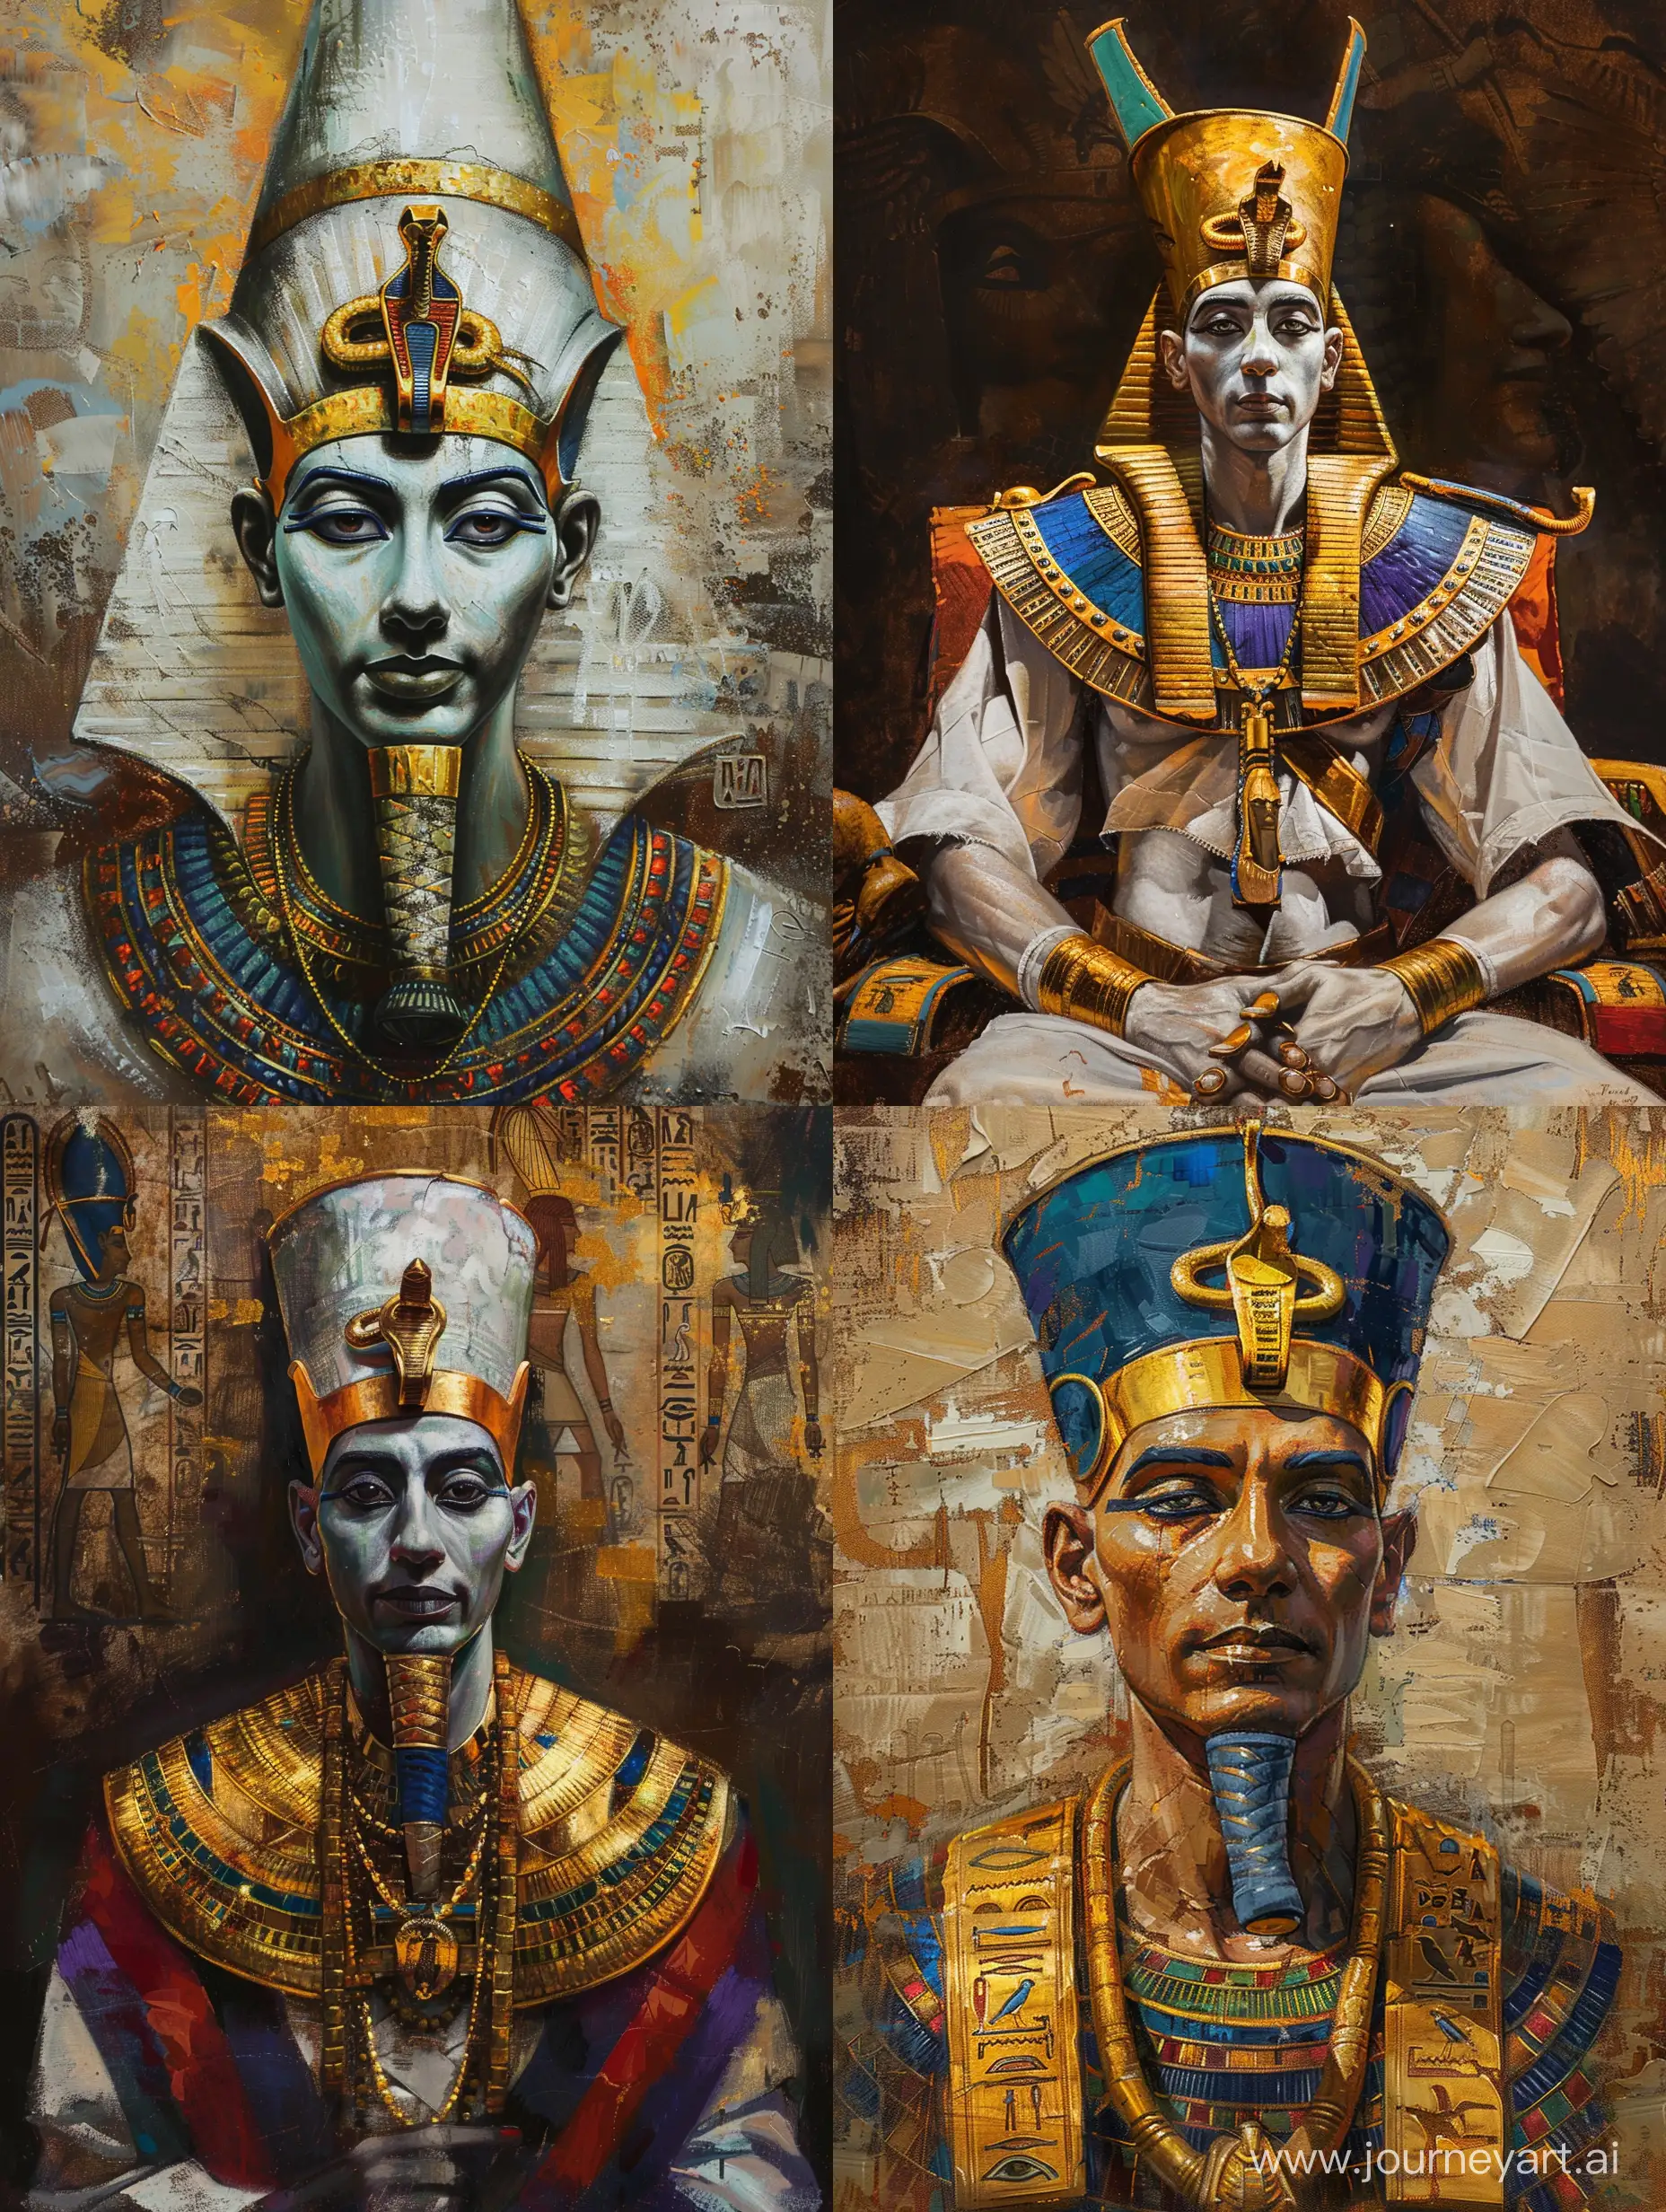 древнеегипетский бог Осирис, золотые украшения, портрет по пояс, масляная живопись, детальная проработка, стилизация, высокое качество